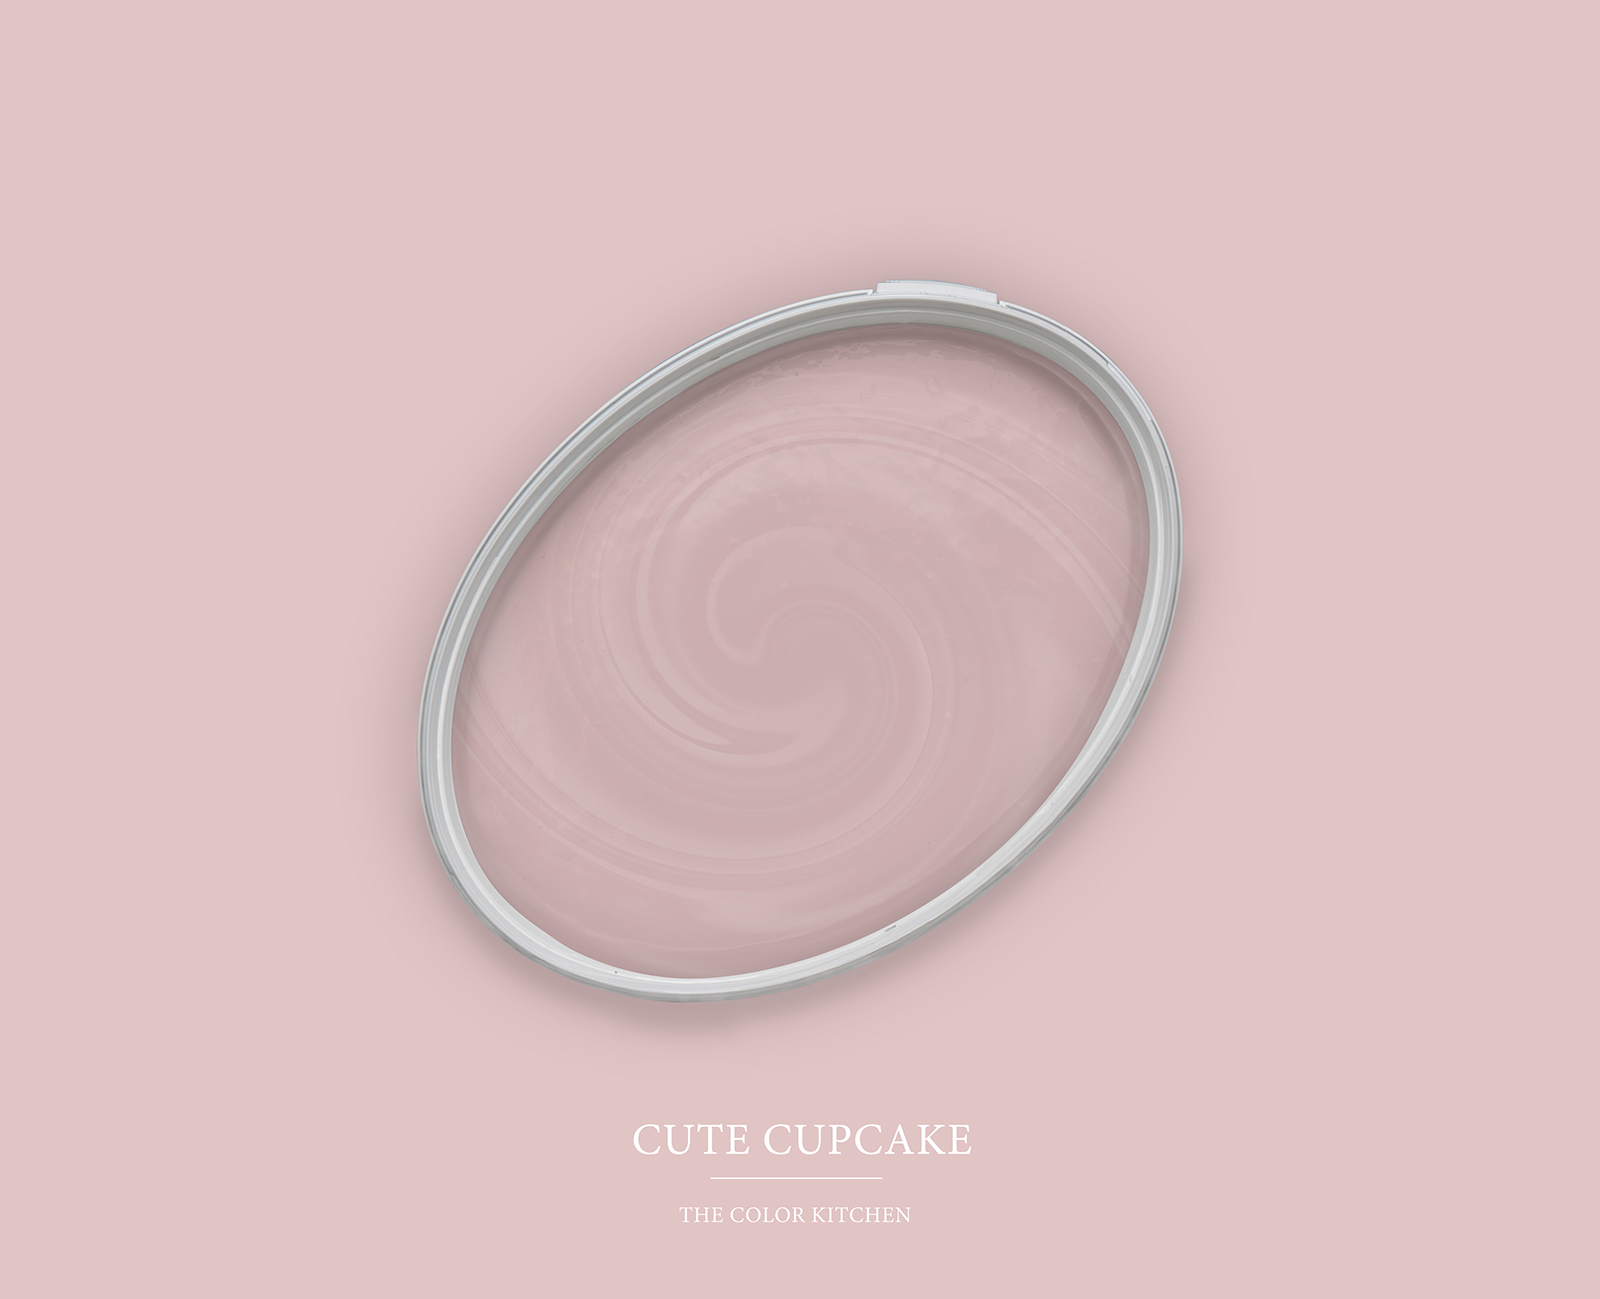 Peinture murale TCK7008 »Cute Cupcake« en rose tendre – 5,0 litres
